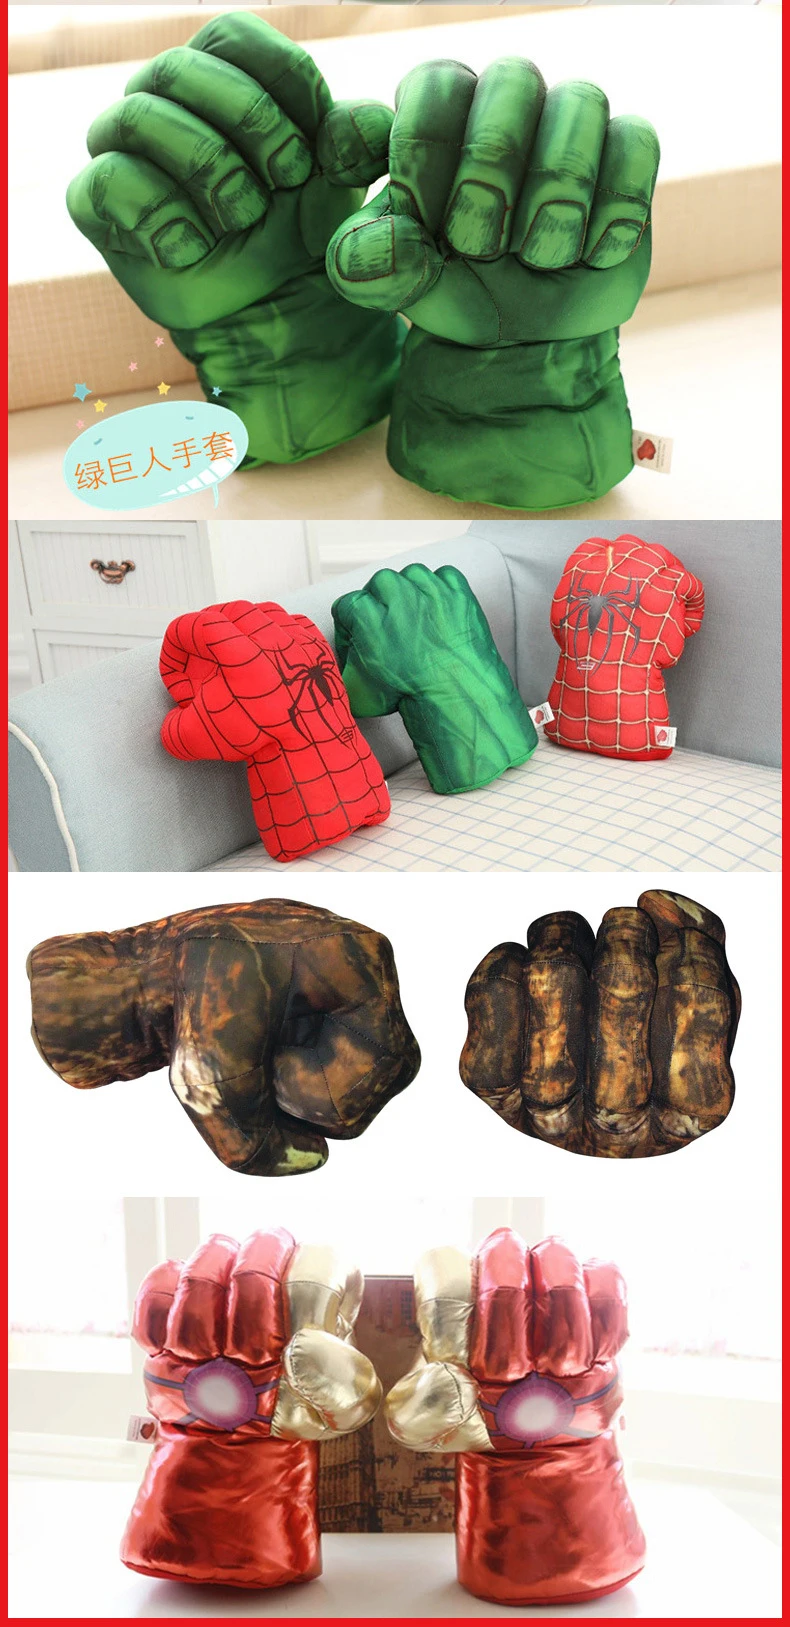 Marvel Мстители эндшпиль невероятная фигурка супергероя Человек-паук халки игрушки Железный человек боксерские перчатки подарок для мальчика Халк перчатки